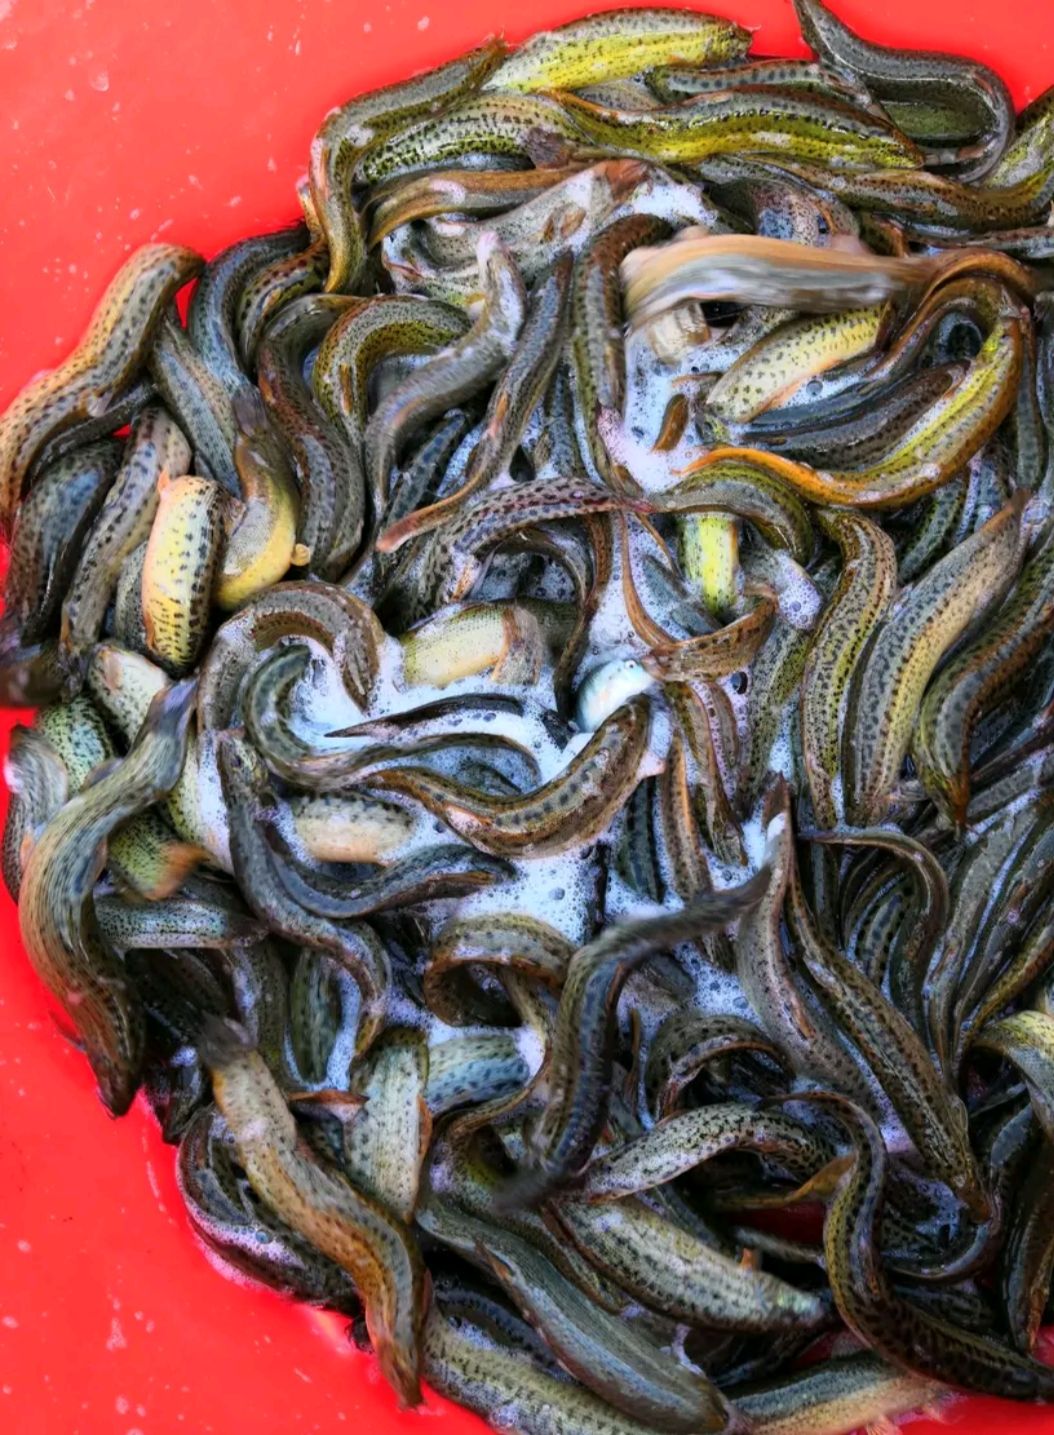 鱼塘生产出天然优质台湾泥鳅,本塘水源来自本地江水,无污染,天然生长